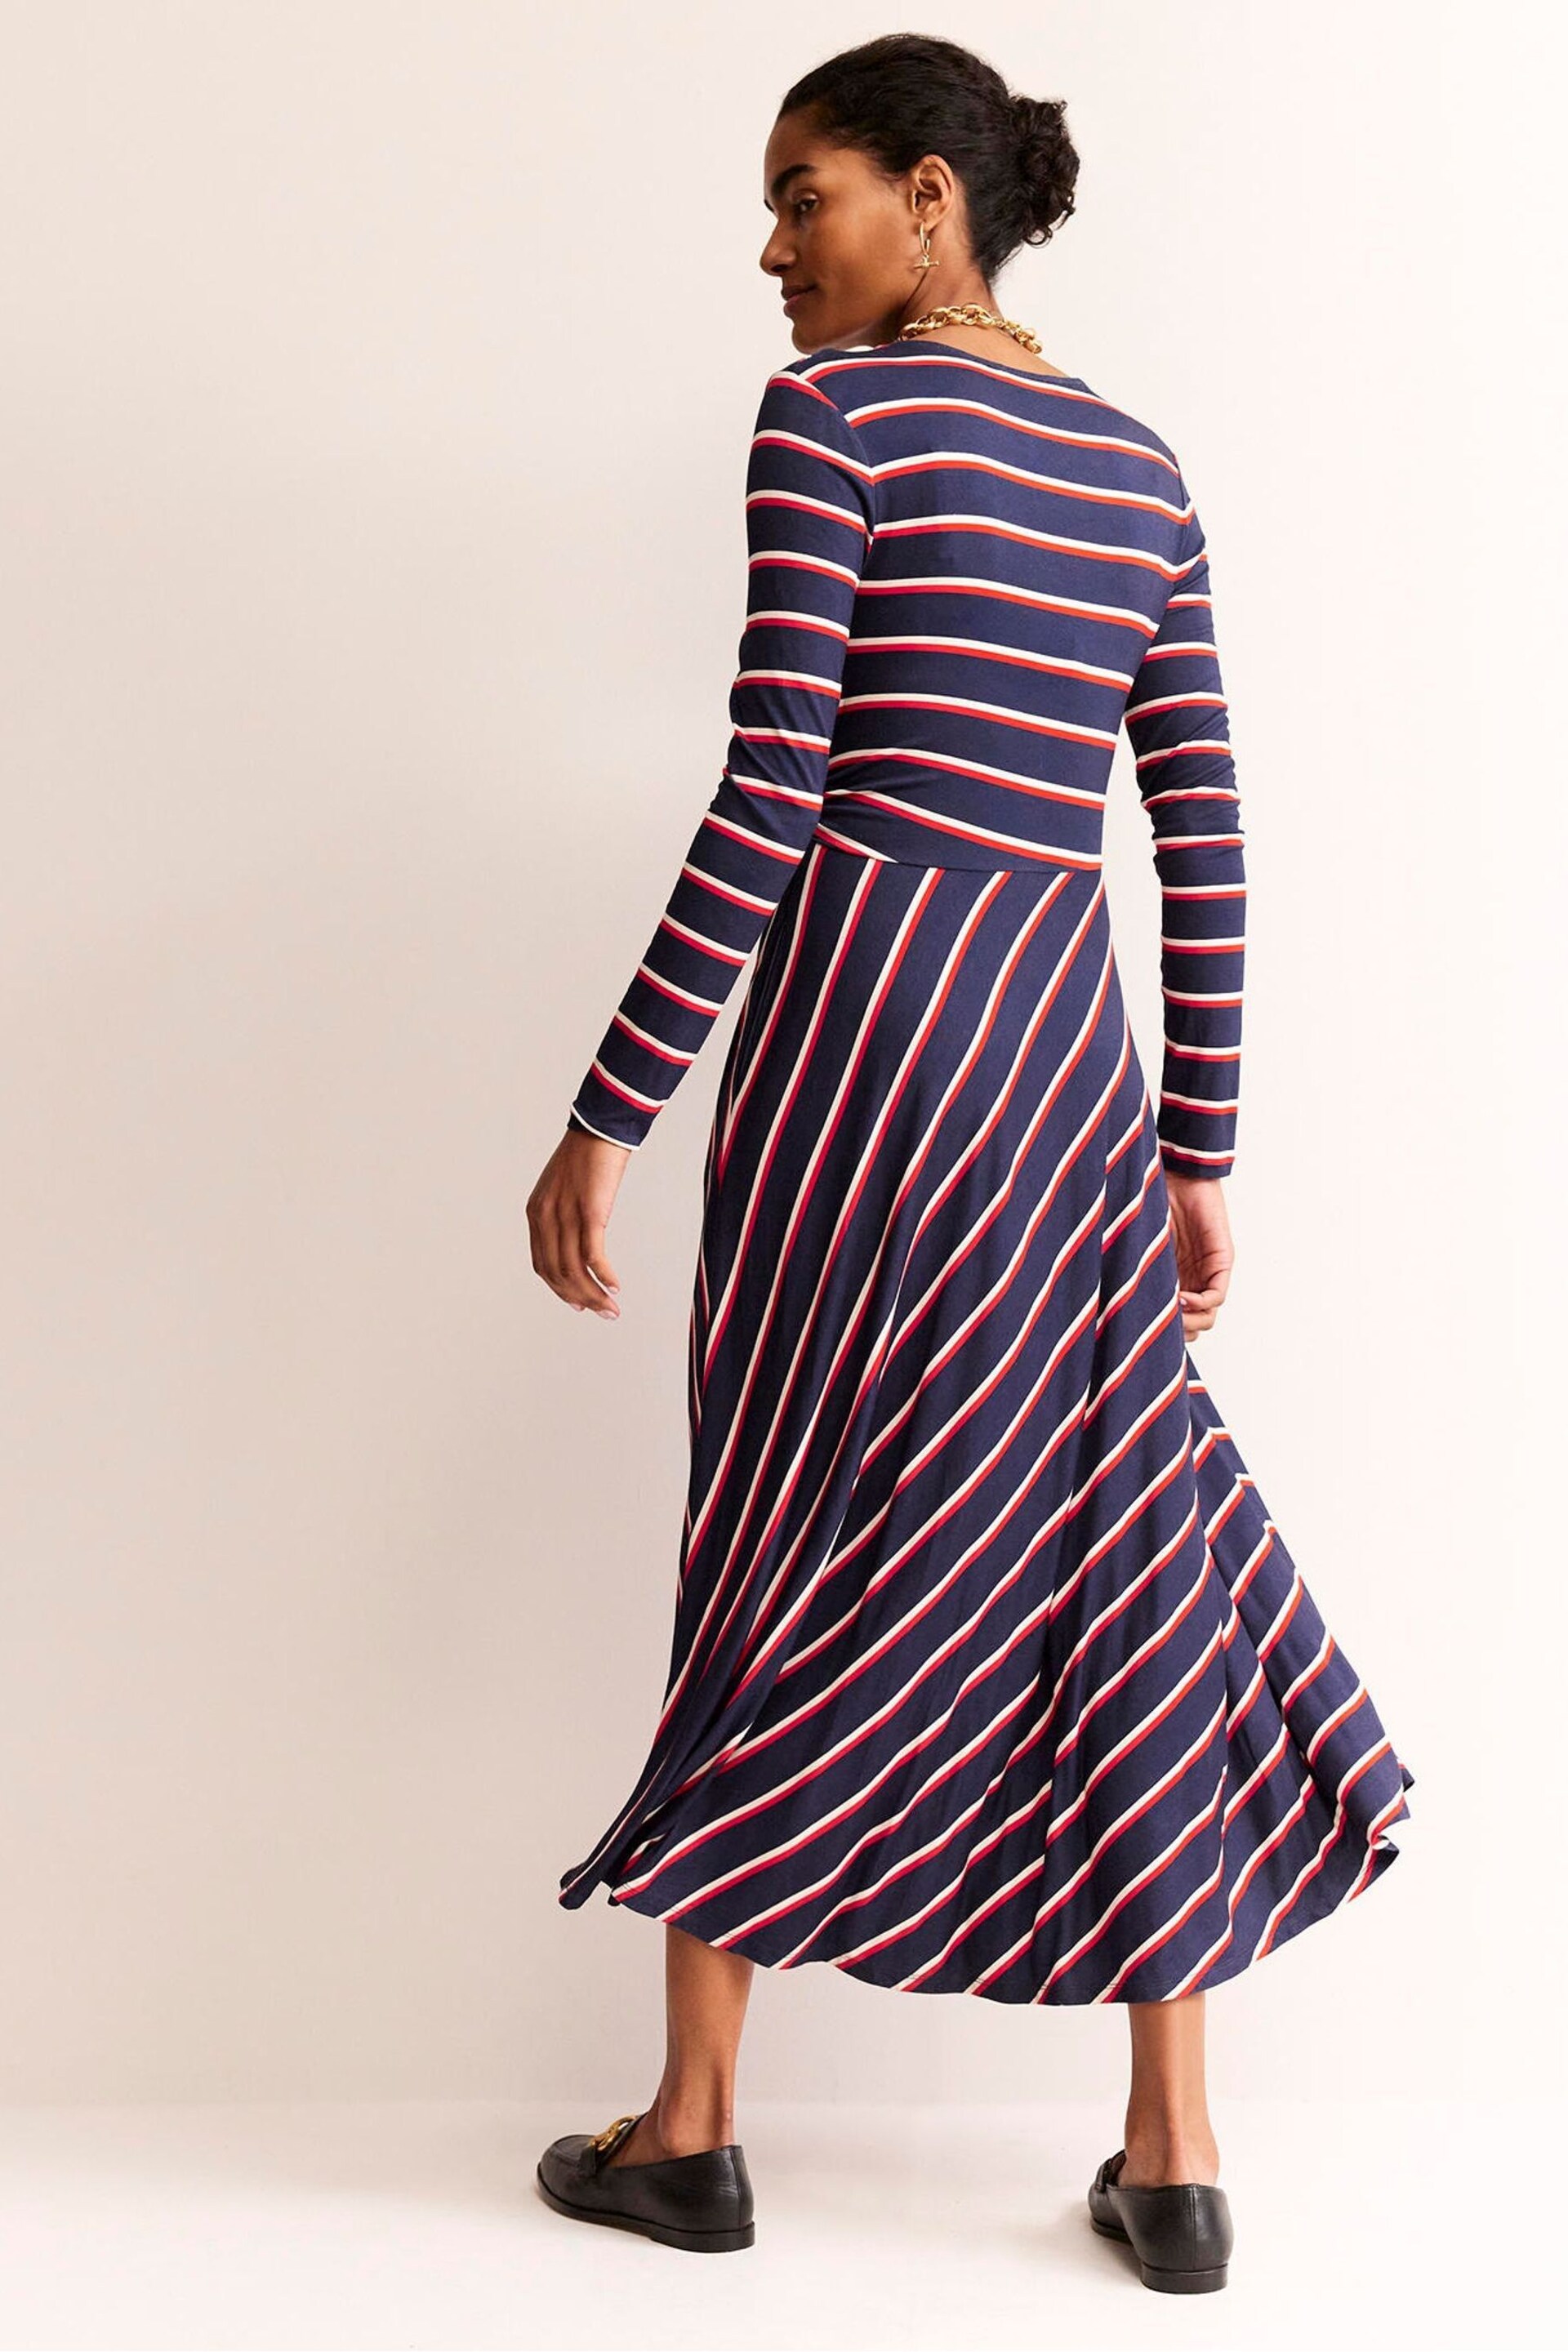 Boden Blue Hotch Stripe Jersey Midi Dress - Image 2 of 5